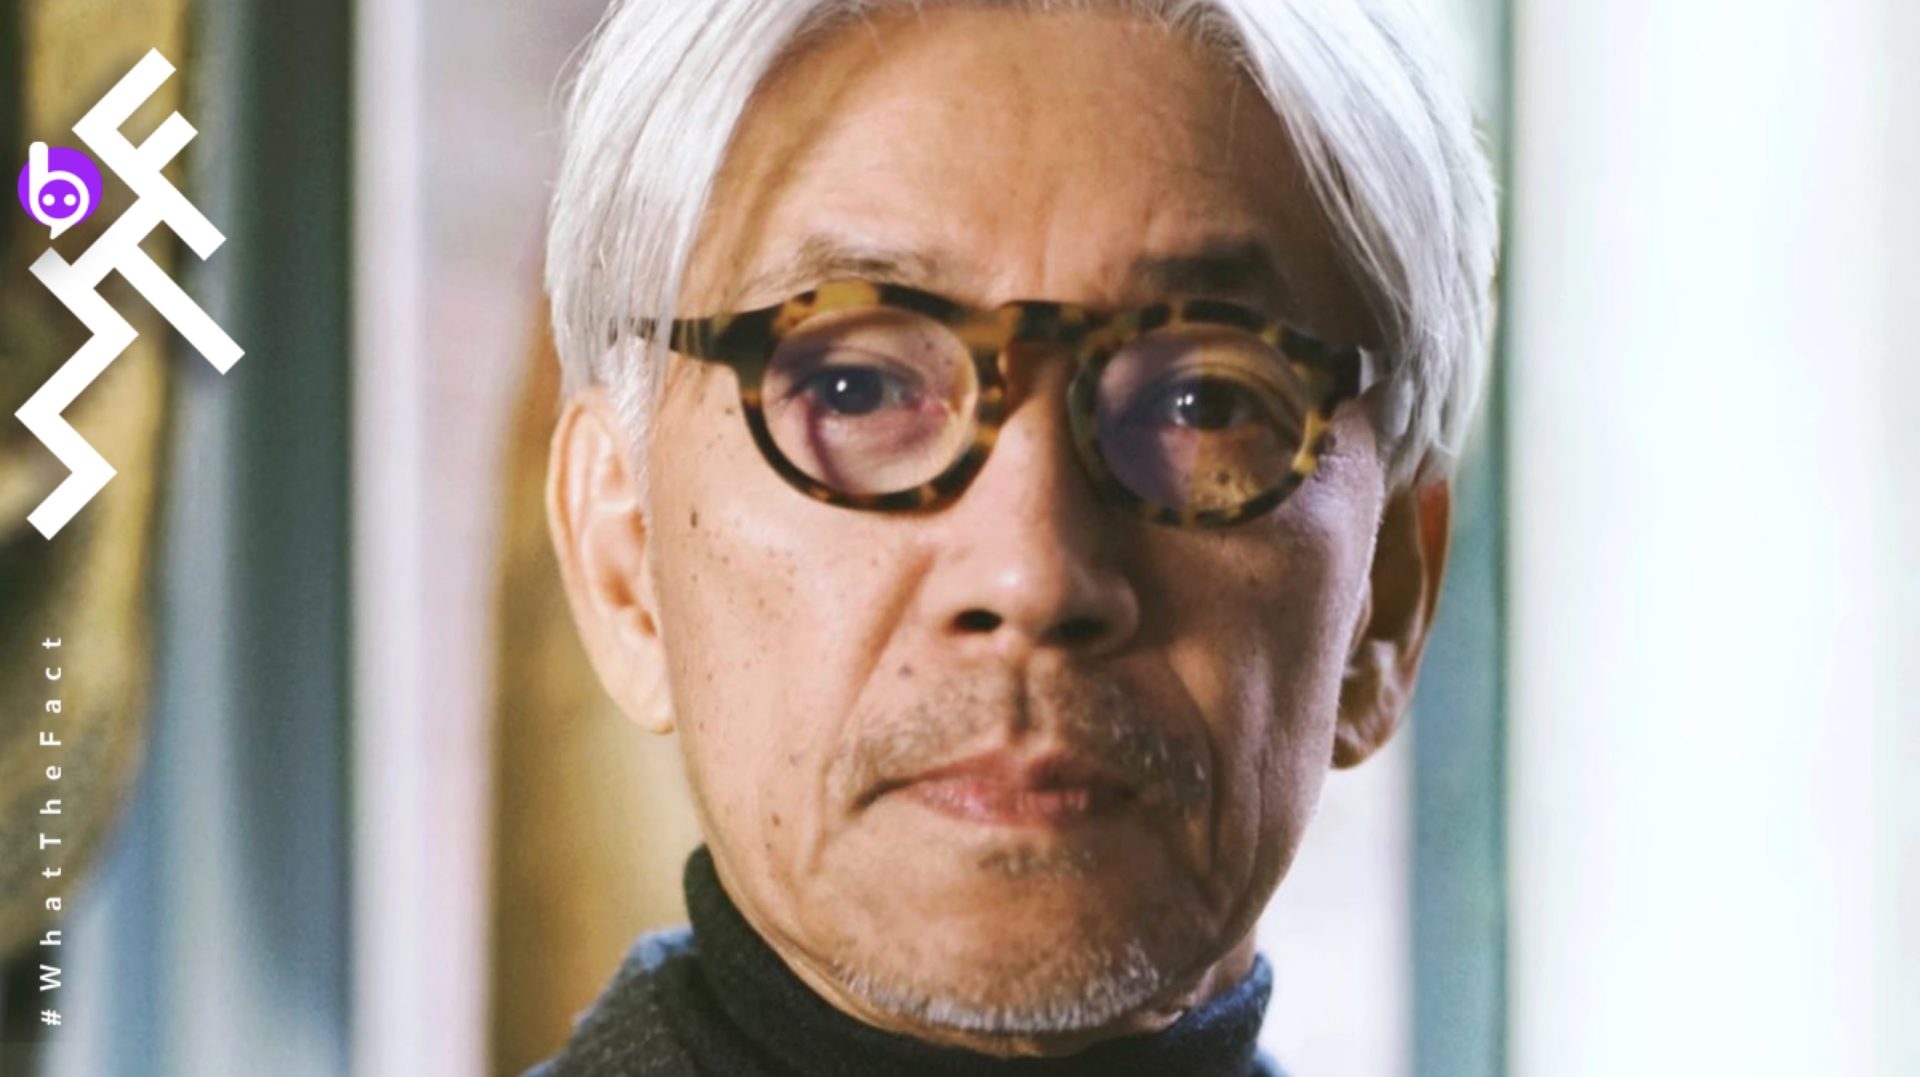 ริวอิจิ ซากาโมโตะ พักรักษาตัวหลังตรวจพบว่าเป็นมะเร็งลำไส้